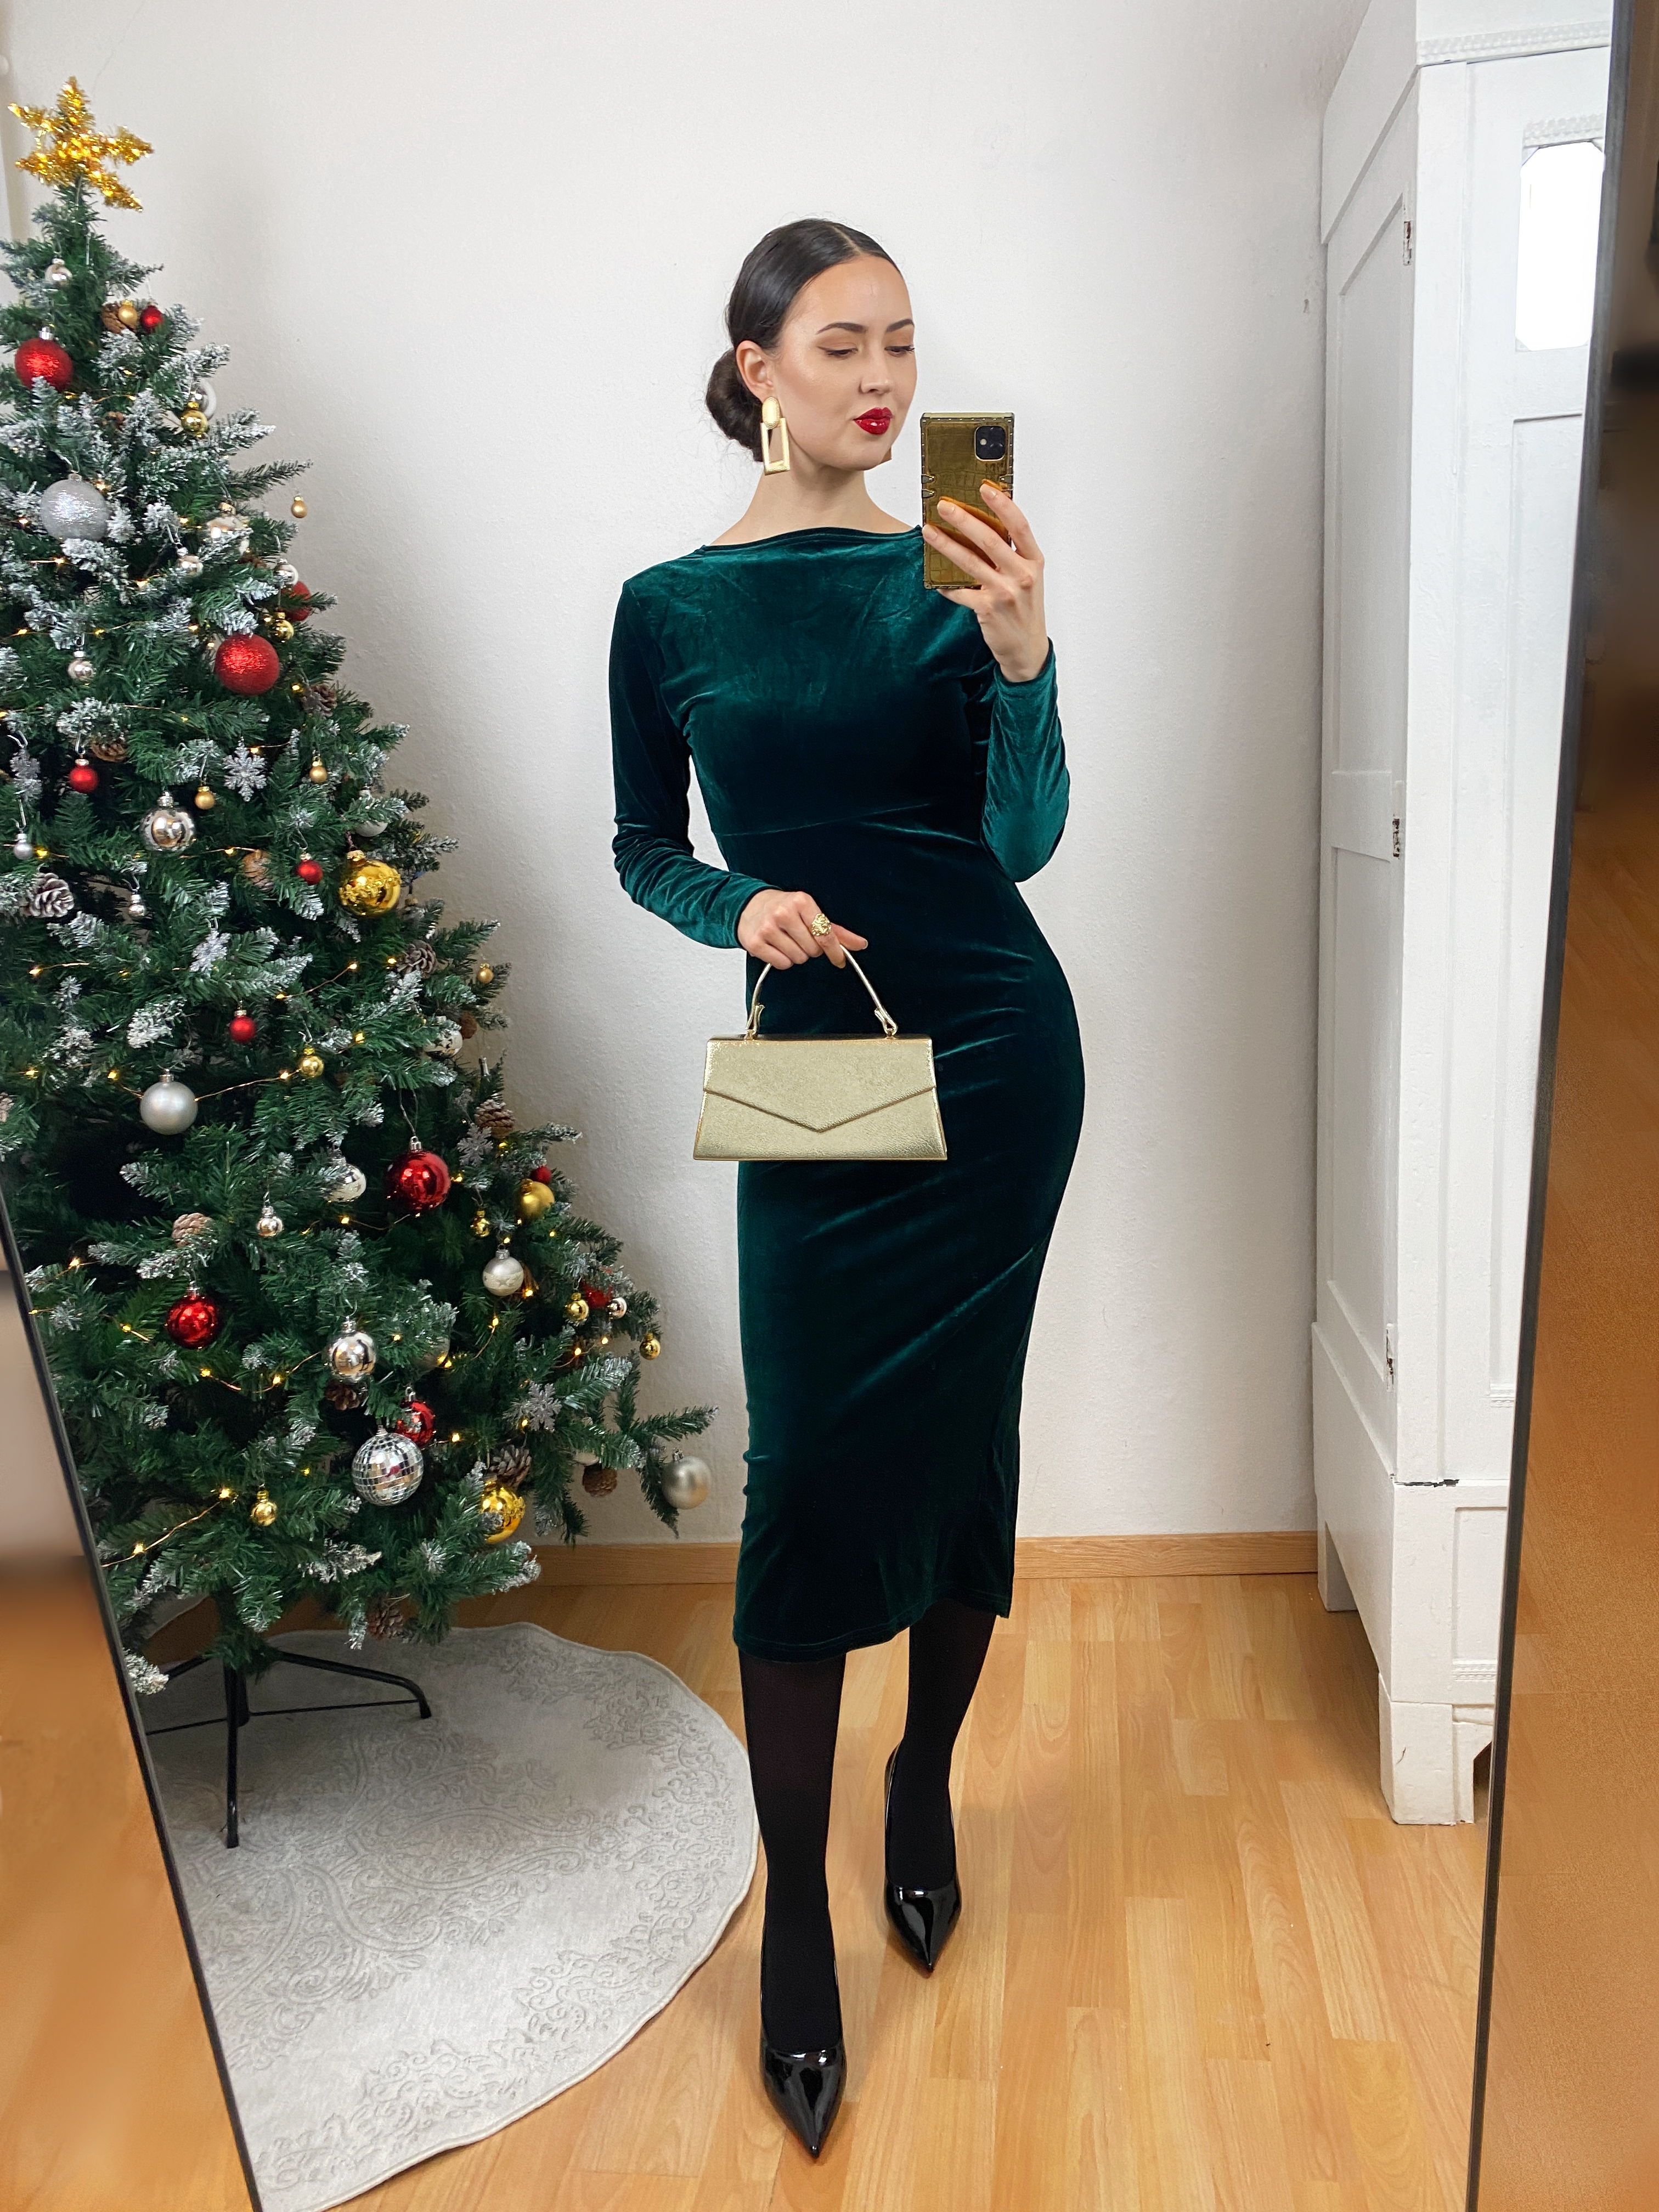 Classy Green Velvet Dress Outfit